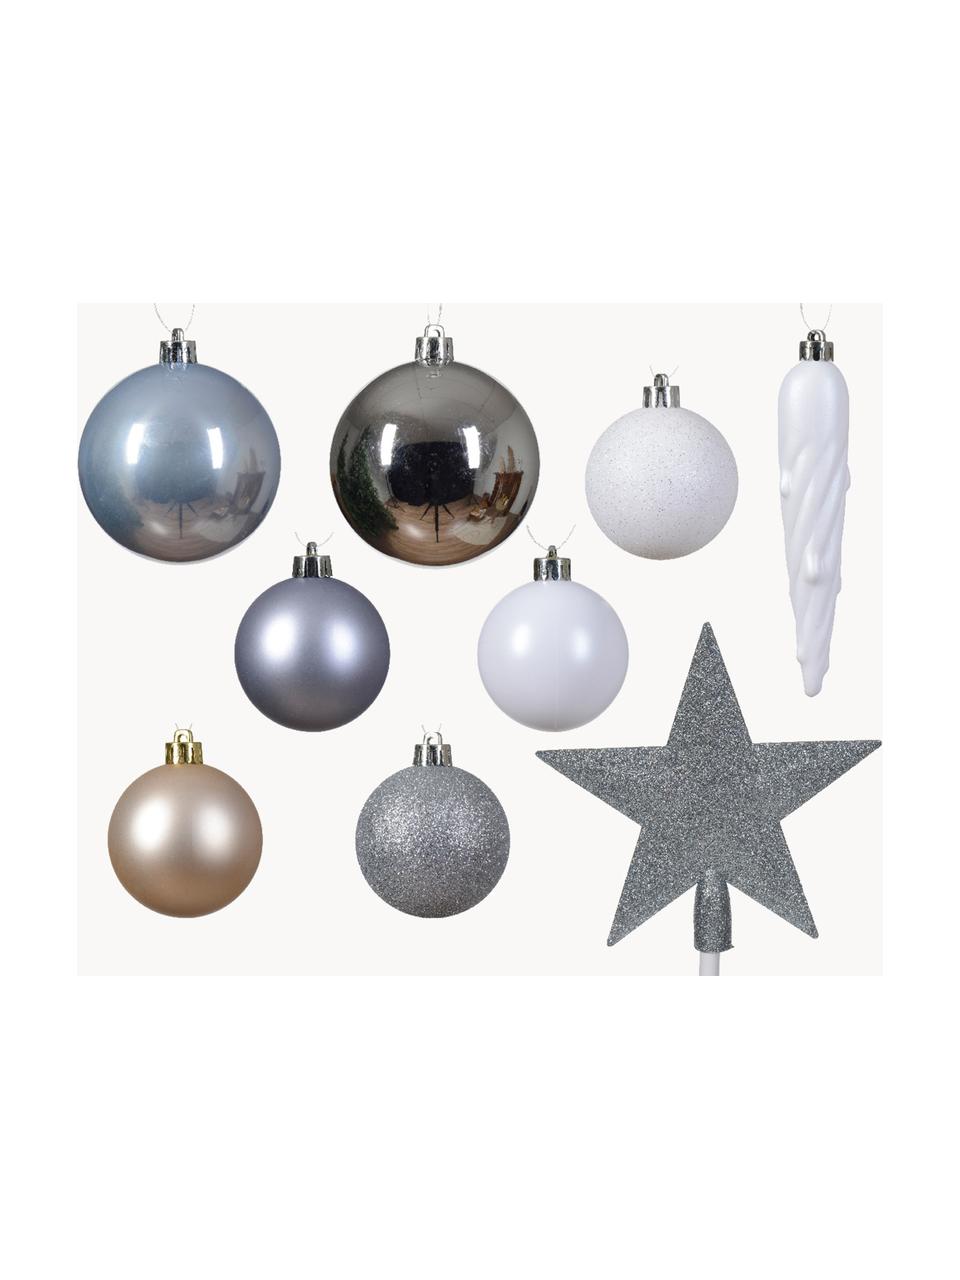 Weihnachtsbaumschmuck Starstruck, 33er-Set, Kunststoff, Weiß, Silberfarben, Graublau, Set mit verschiedenen Größen